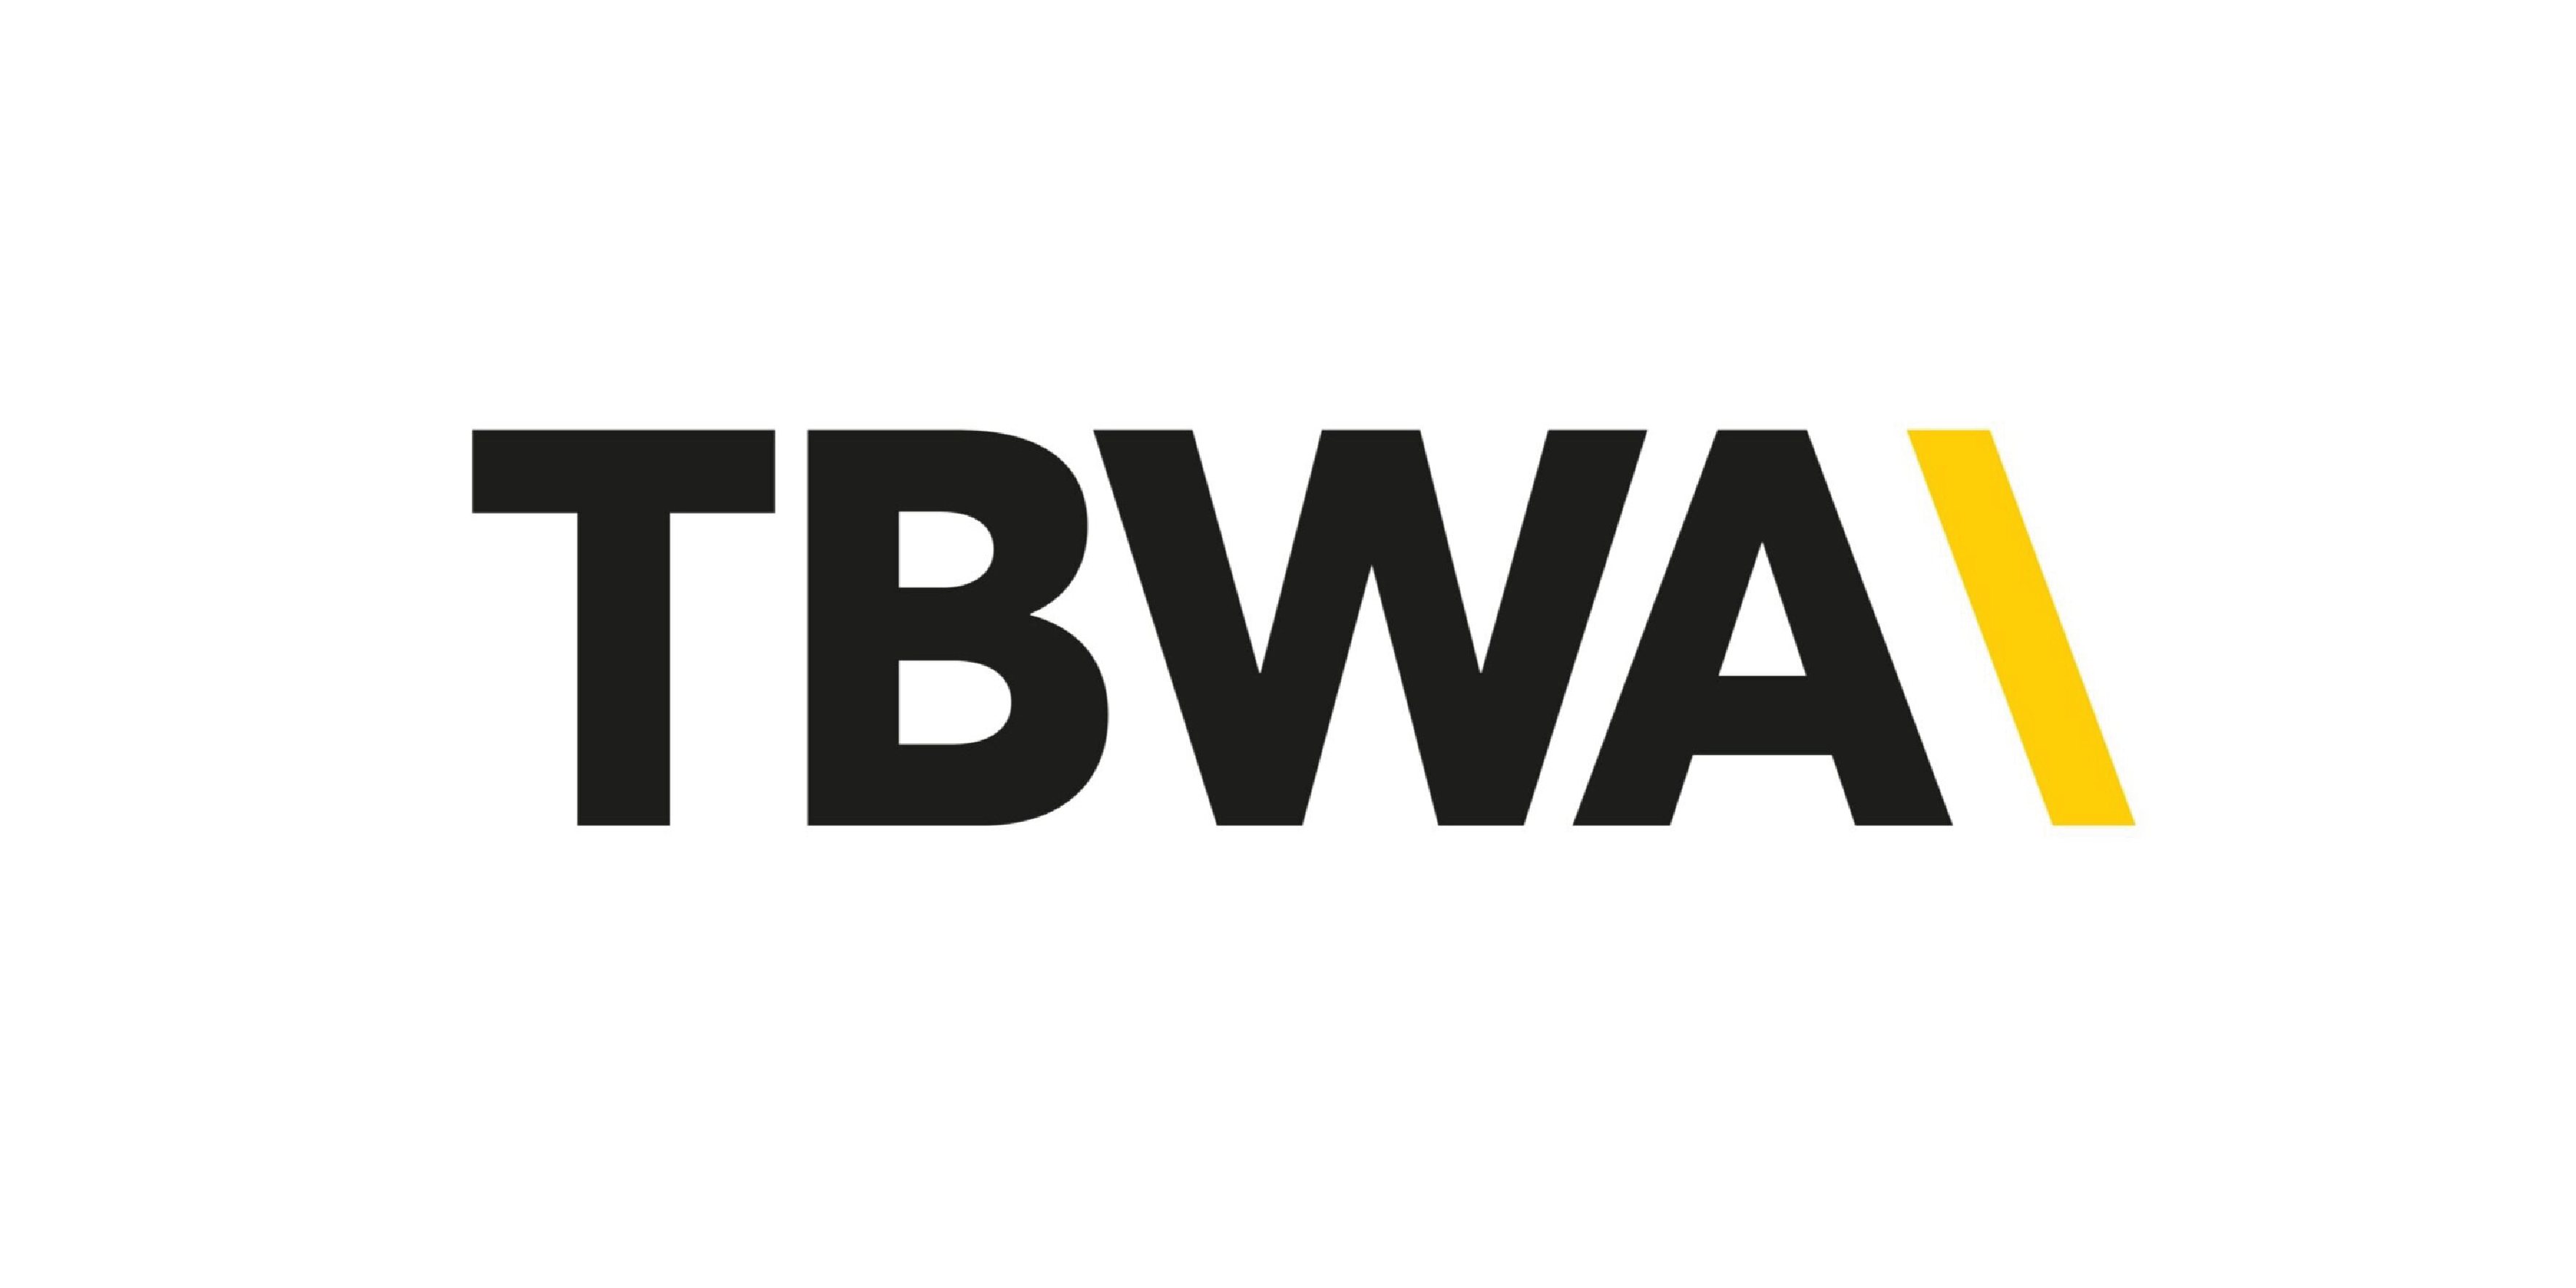 tbwa 1, Graphic Design Courses